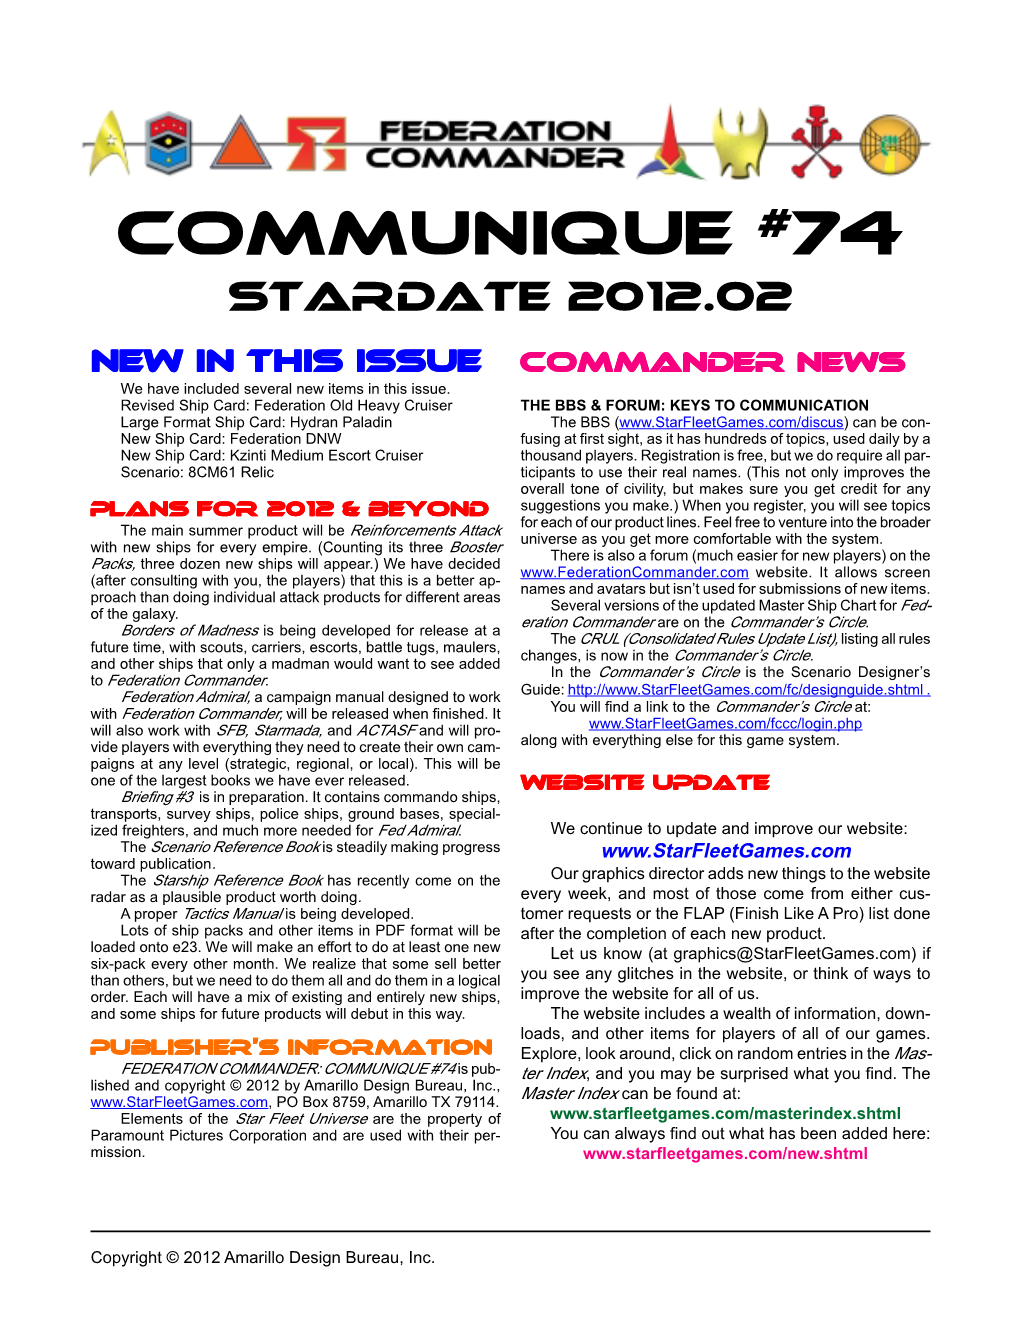 Communique #74 Stardate 2012.02